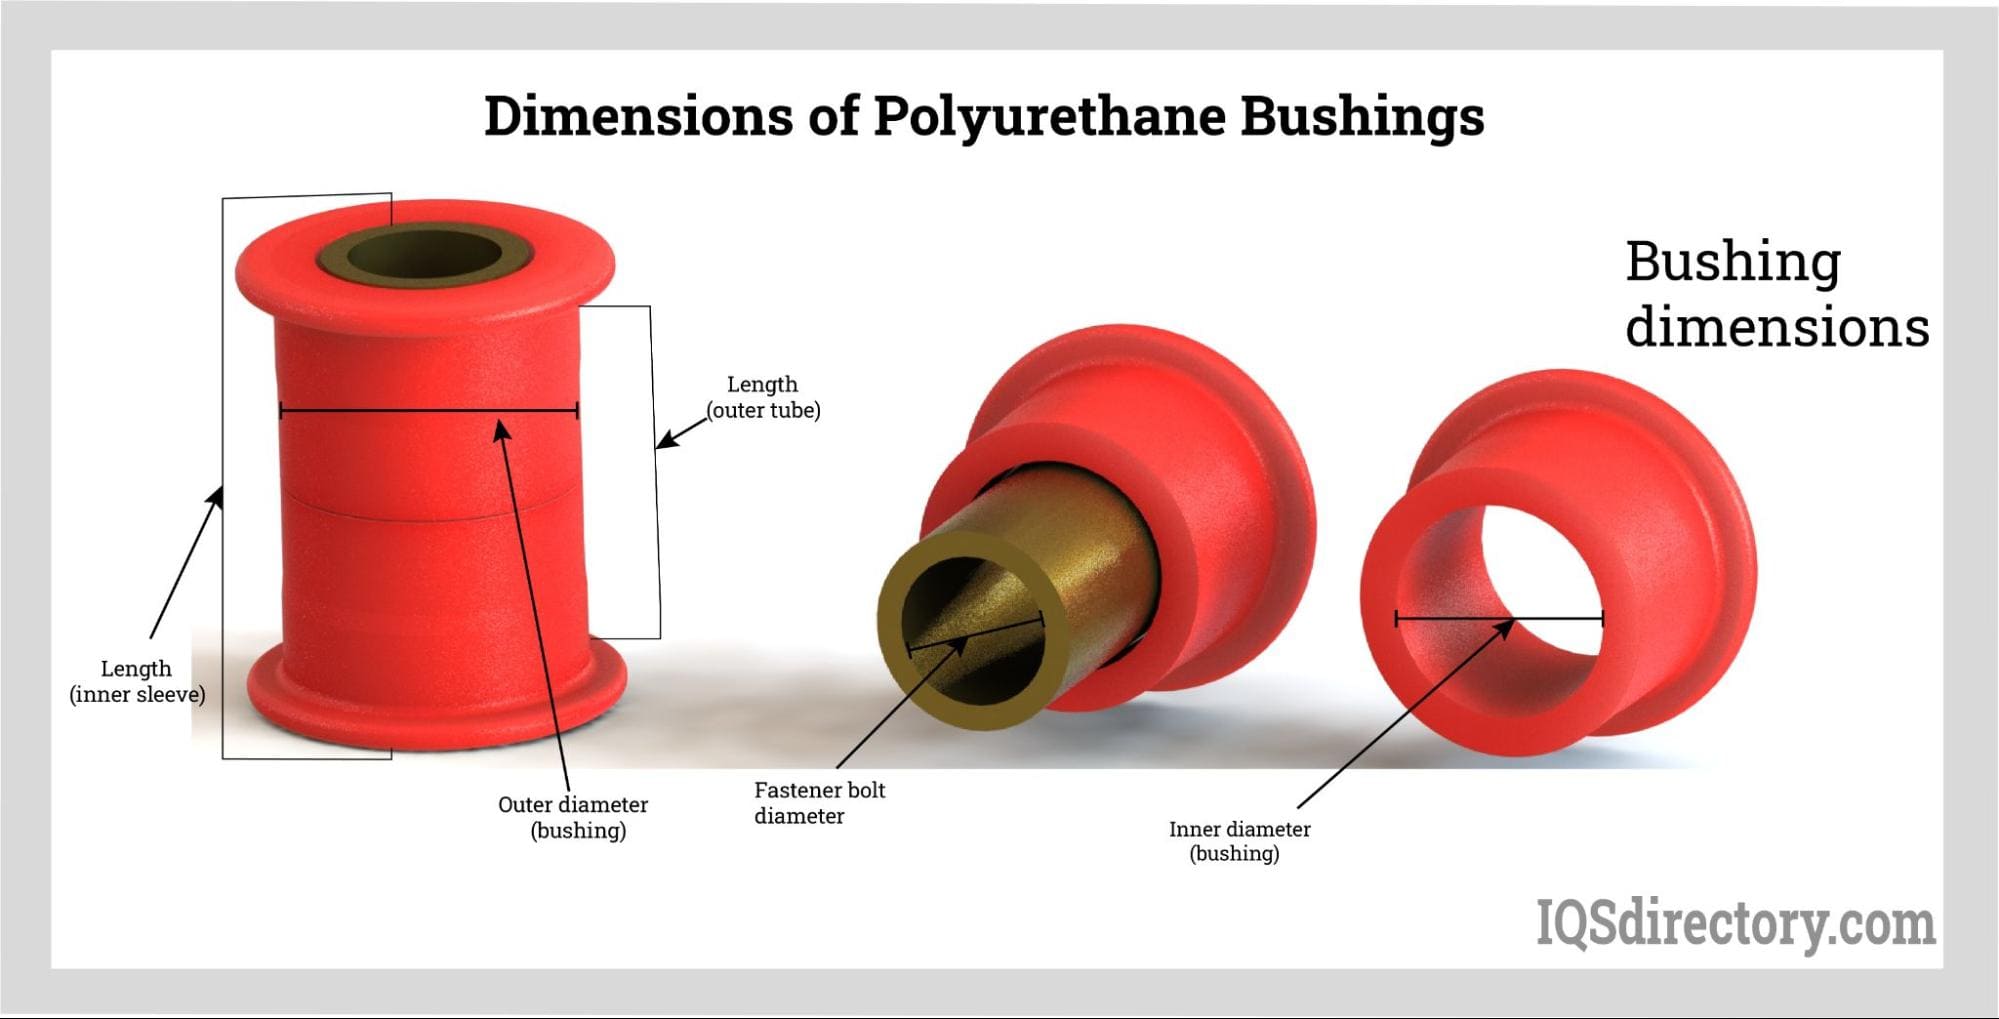 Dimensions of Polyurethane Bushings